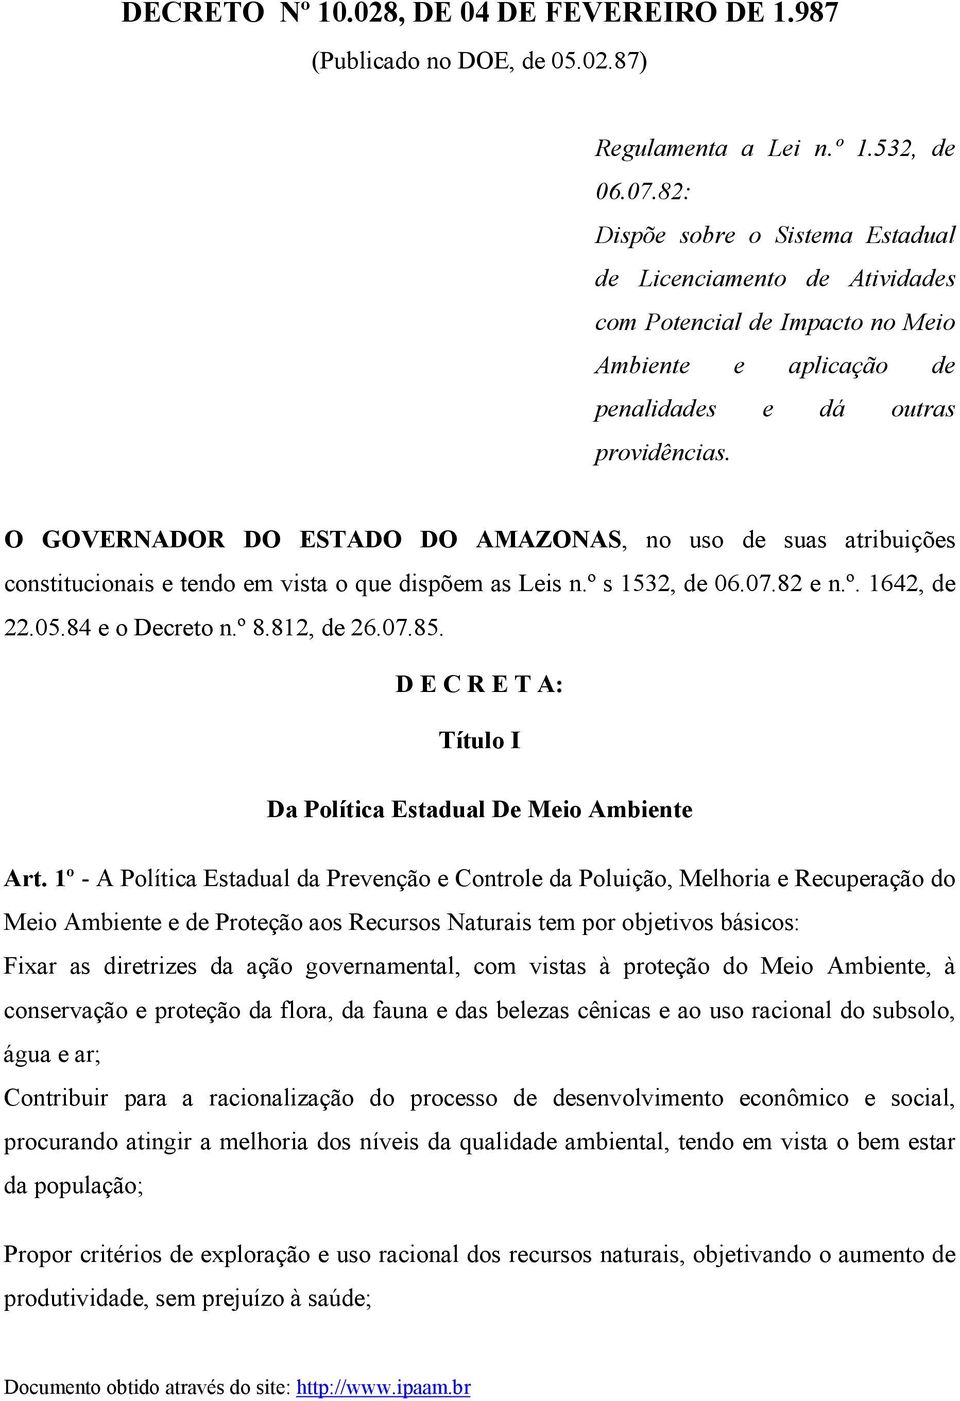 O GOVERNADOR DO ESTADO DO AMAZONAS, no uso de suas atribuições constitucionais e tendo em vista o que dispõem as Leis n.º s 1532, de 06.07.82 e n.º. 1642, de 22.05.84 e o Decreto n.º 8.812, de 26.07.85.